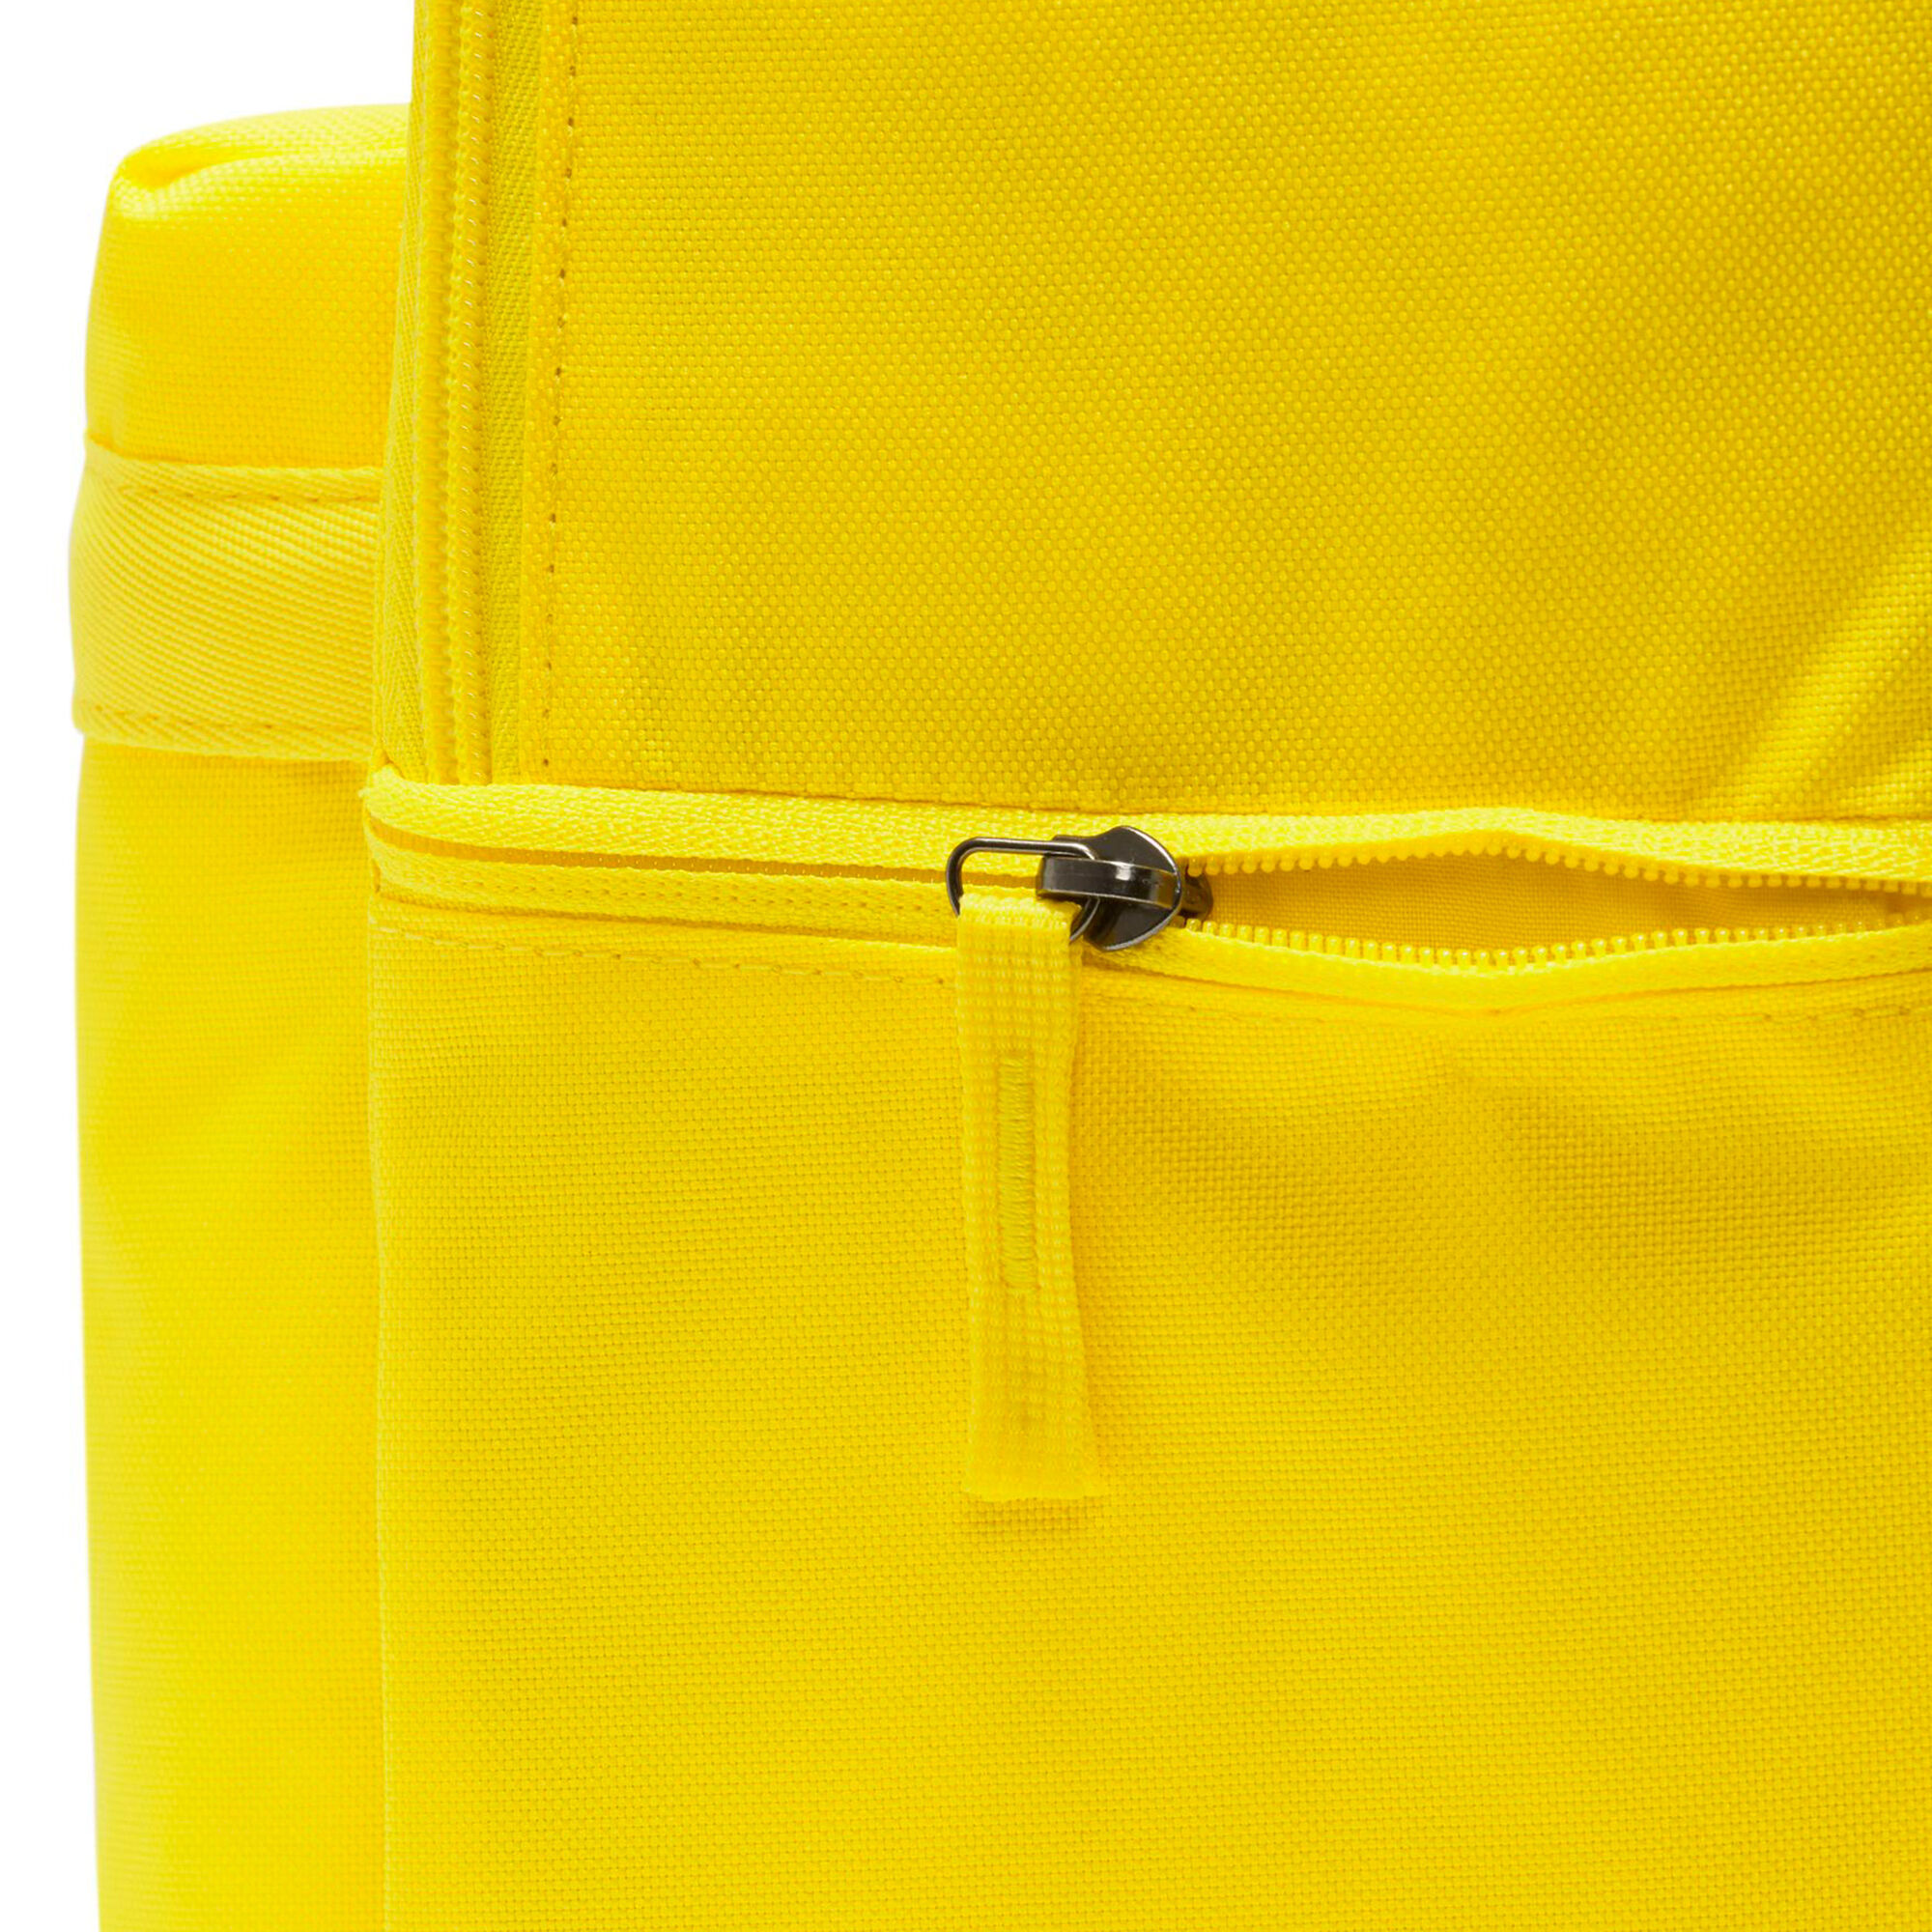 Buy Nike Heritage 2.0 Backpack Yellow, Black online | Tennis Point UK